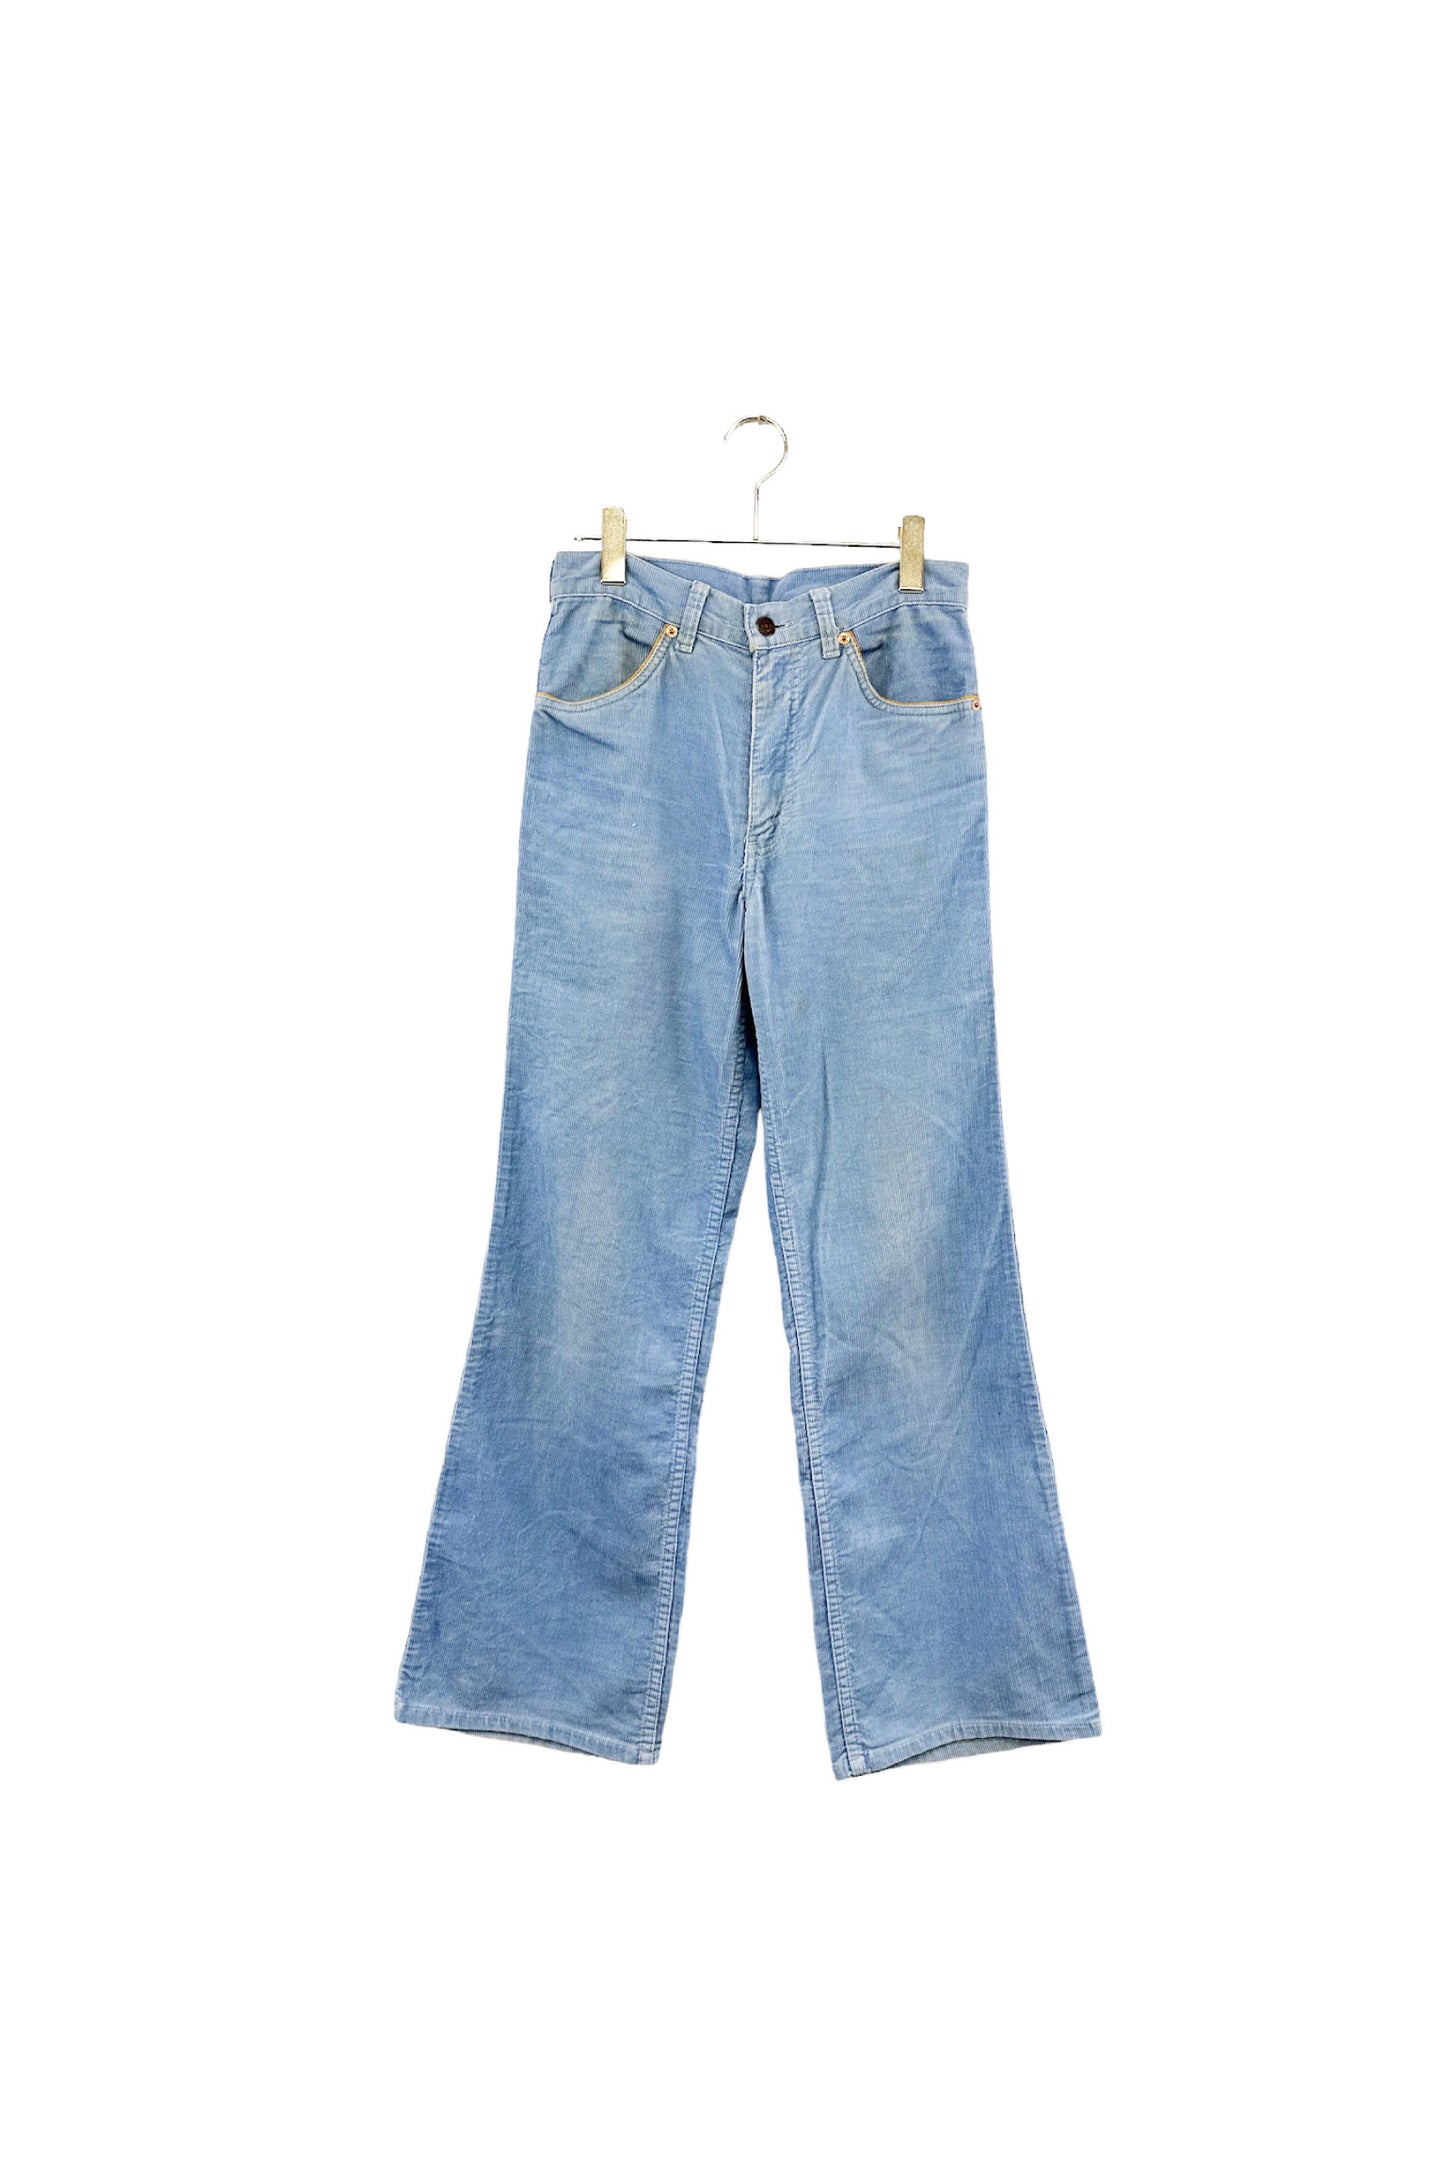 Levi's blue corduroy pants – ReSCOUNT STORE